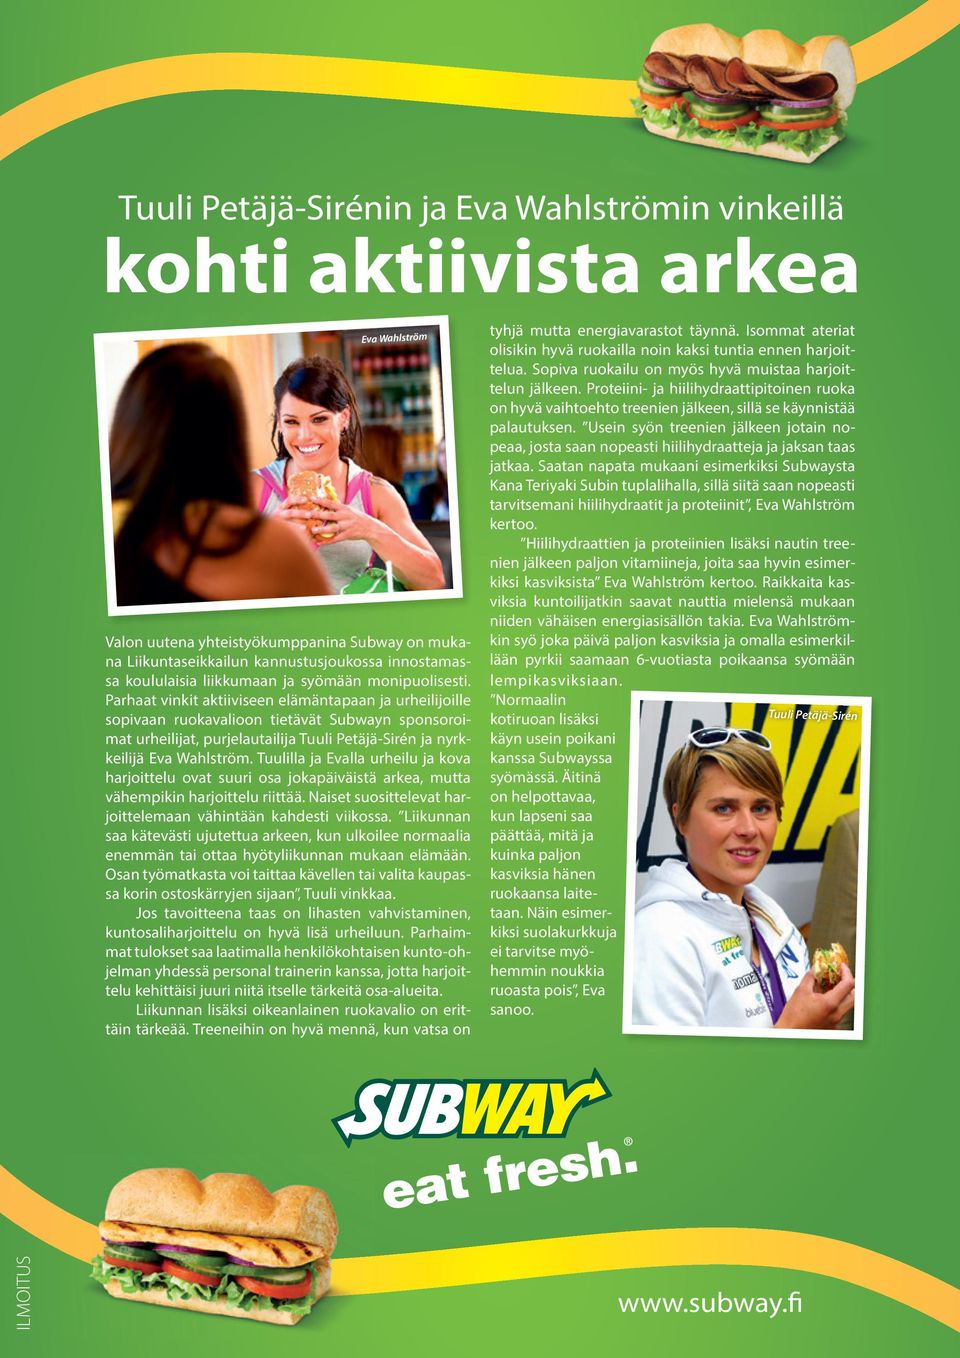 Parhaat vinkit aktiiviseen elämäntapaan ja urheilijoille sopivaan ruokavalioon tietävät Subwayn sponsoroimat urheilijat, purjelautailija Tuuli Petäjä-Sirén ja nyrkkeilijä Eva Wahlström.